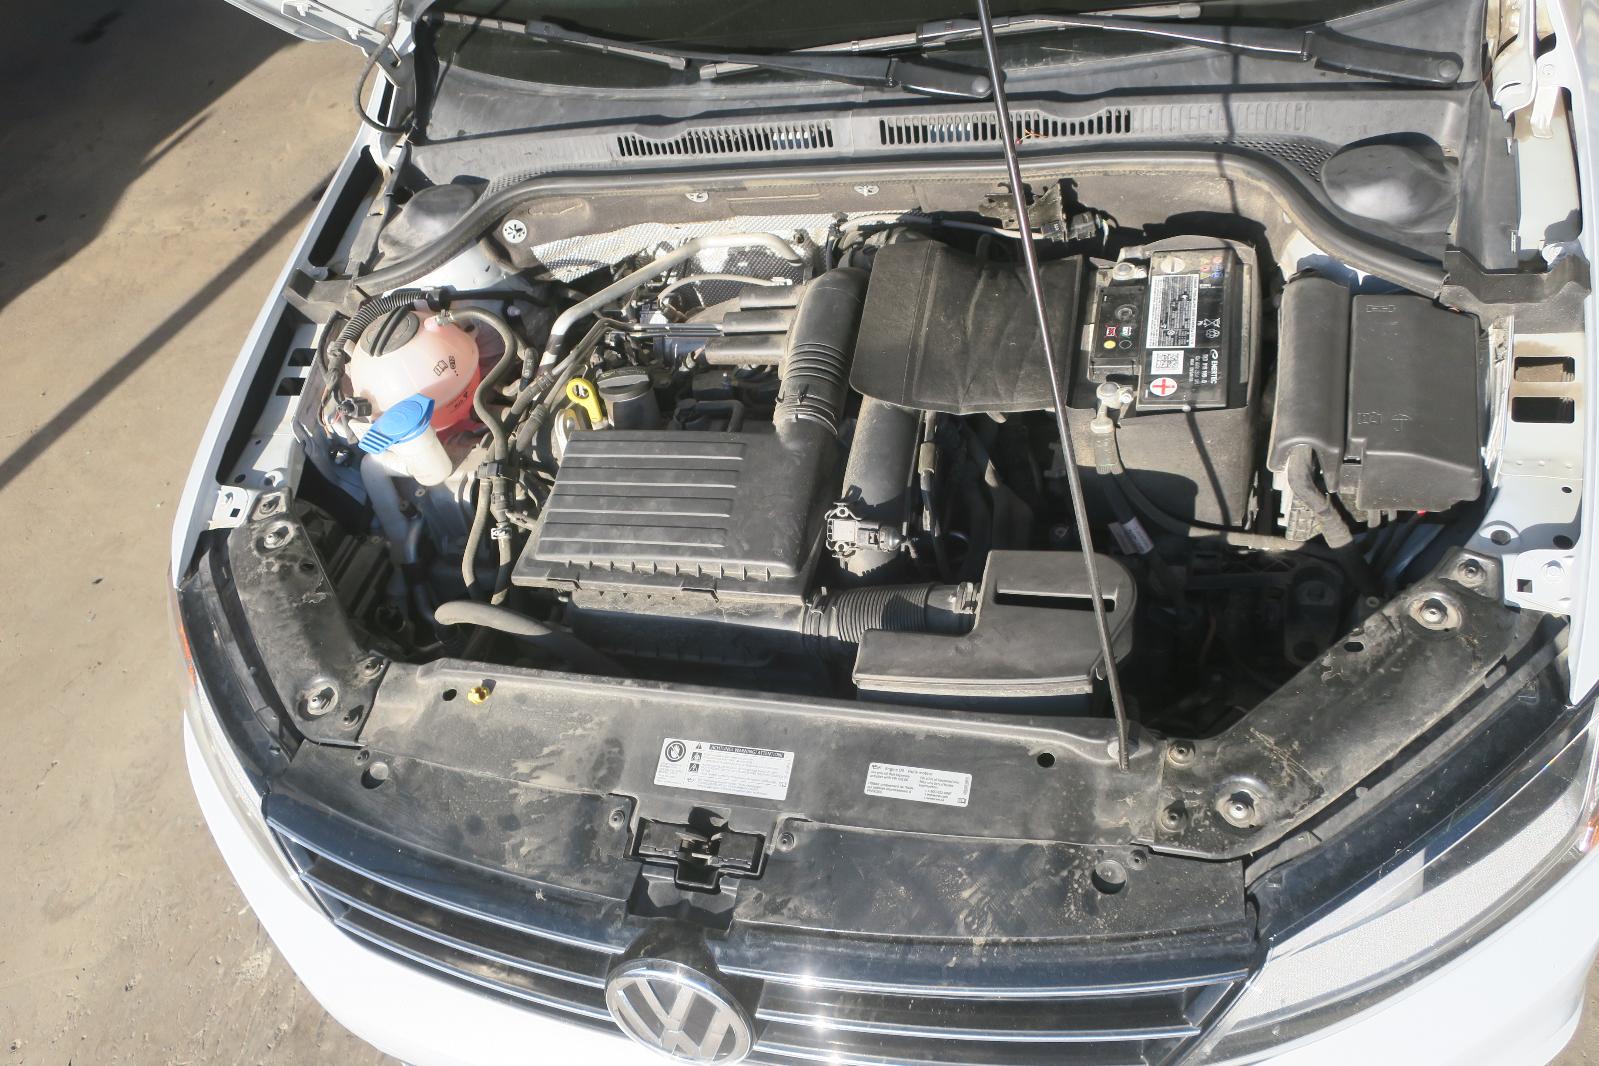 2010 Mercedes-Benz GLK-Class Engine Assembly